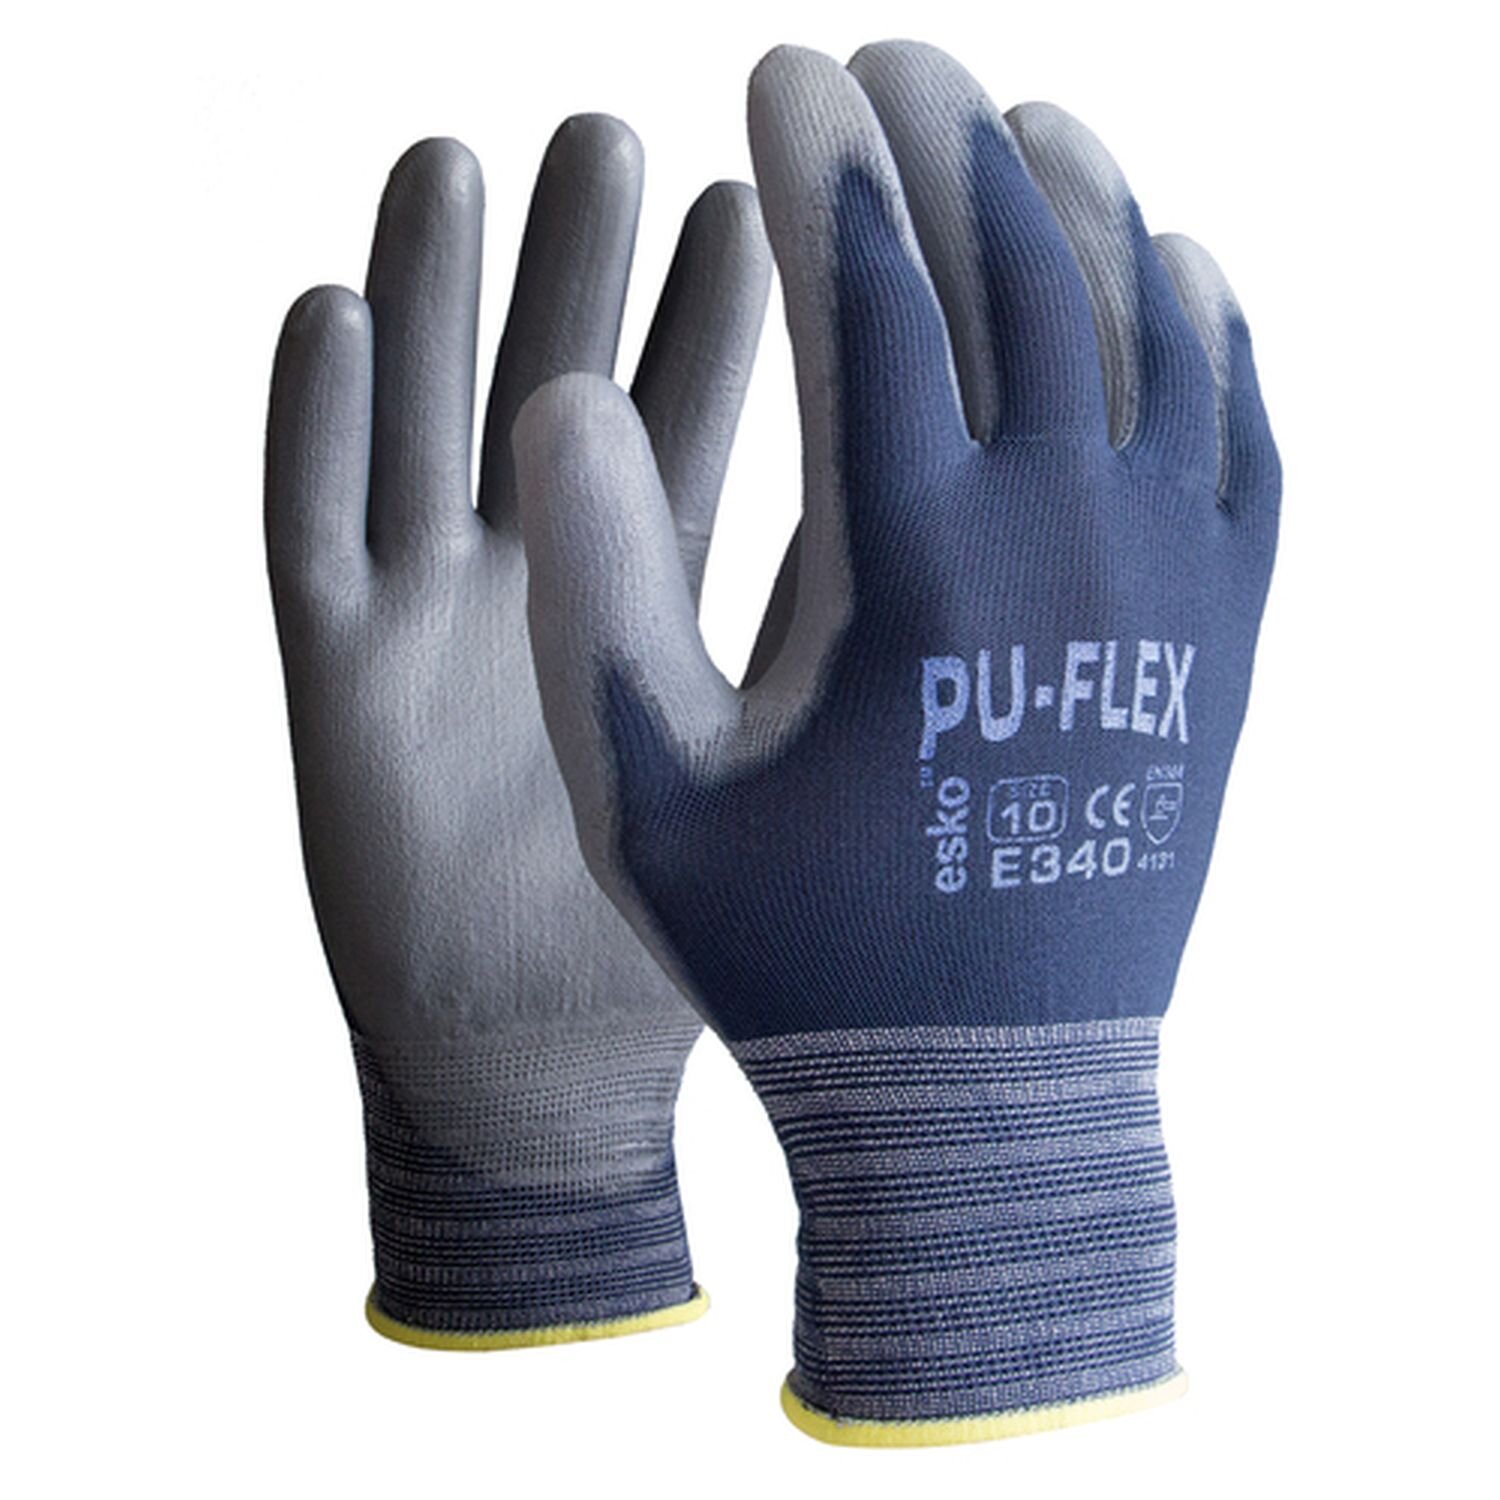 E345 PU-Flex Glove PU Palm Blue/Grey (Pkt 12)